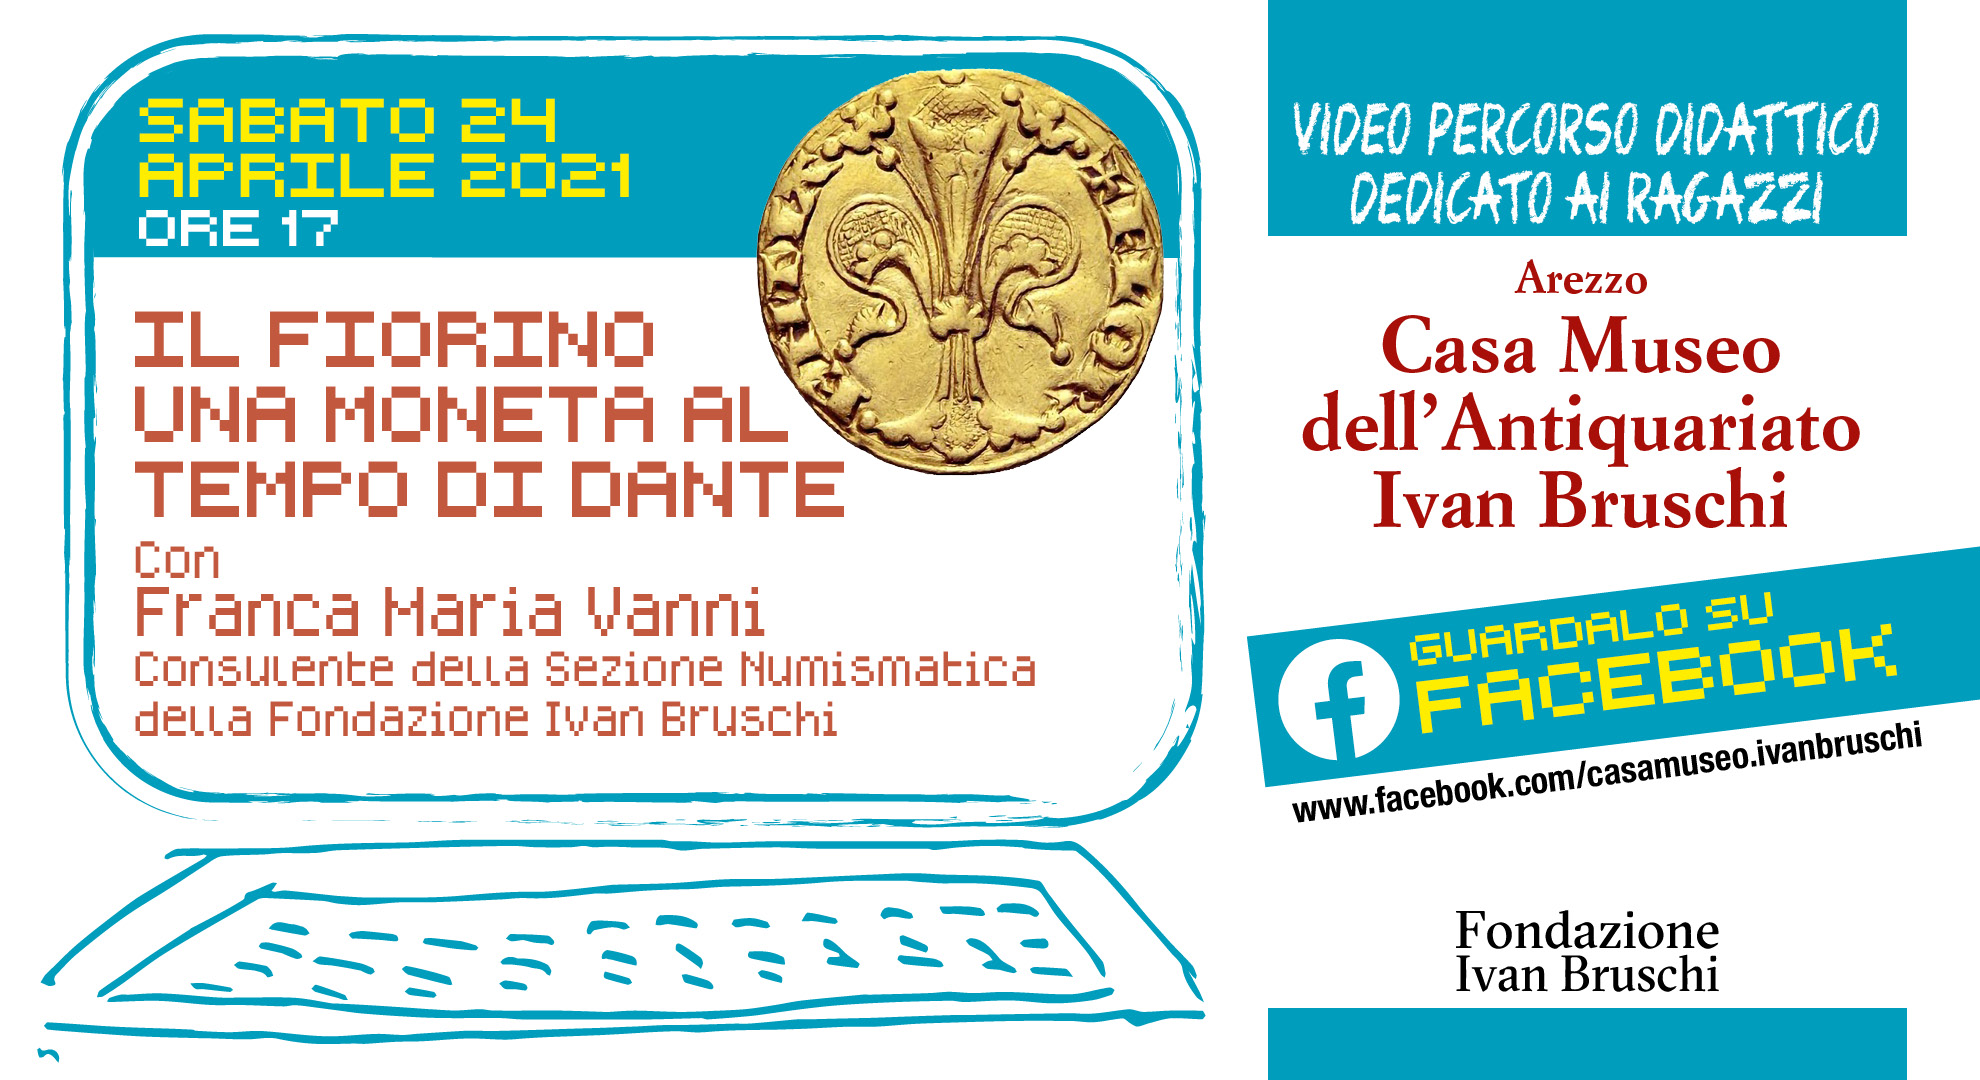 Casa Bruschi: sabato appuntamento online con “Il fiorino, una moneta al tempo di Dante””